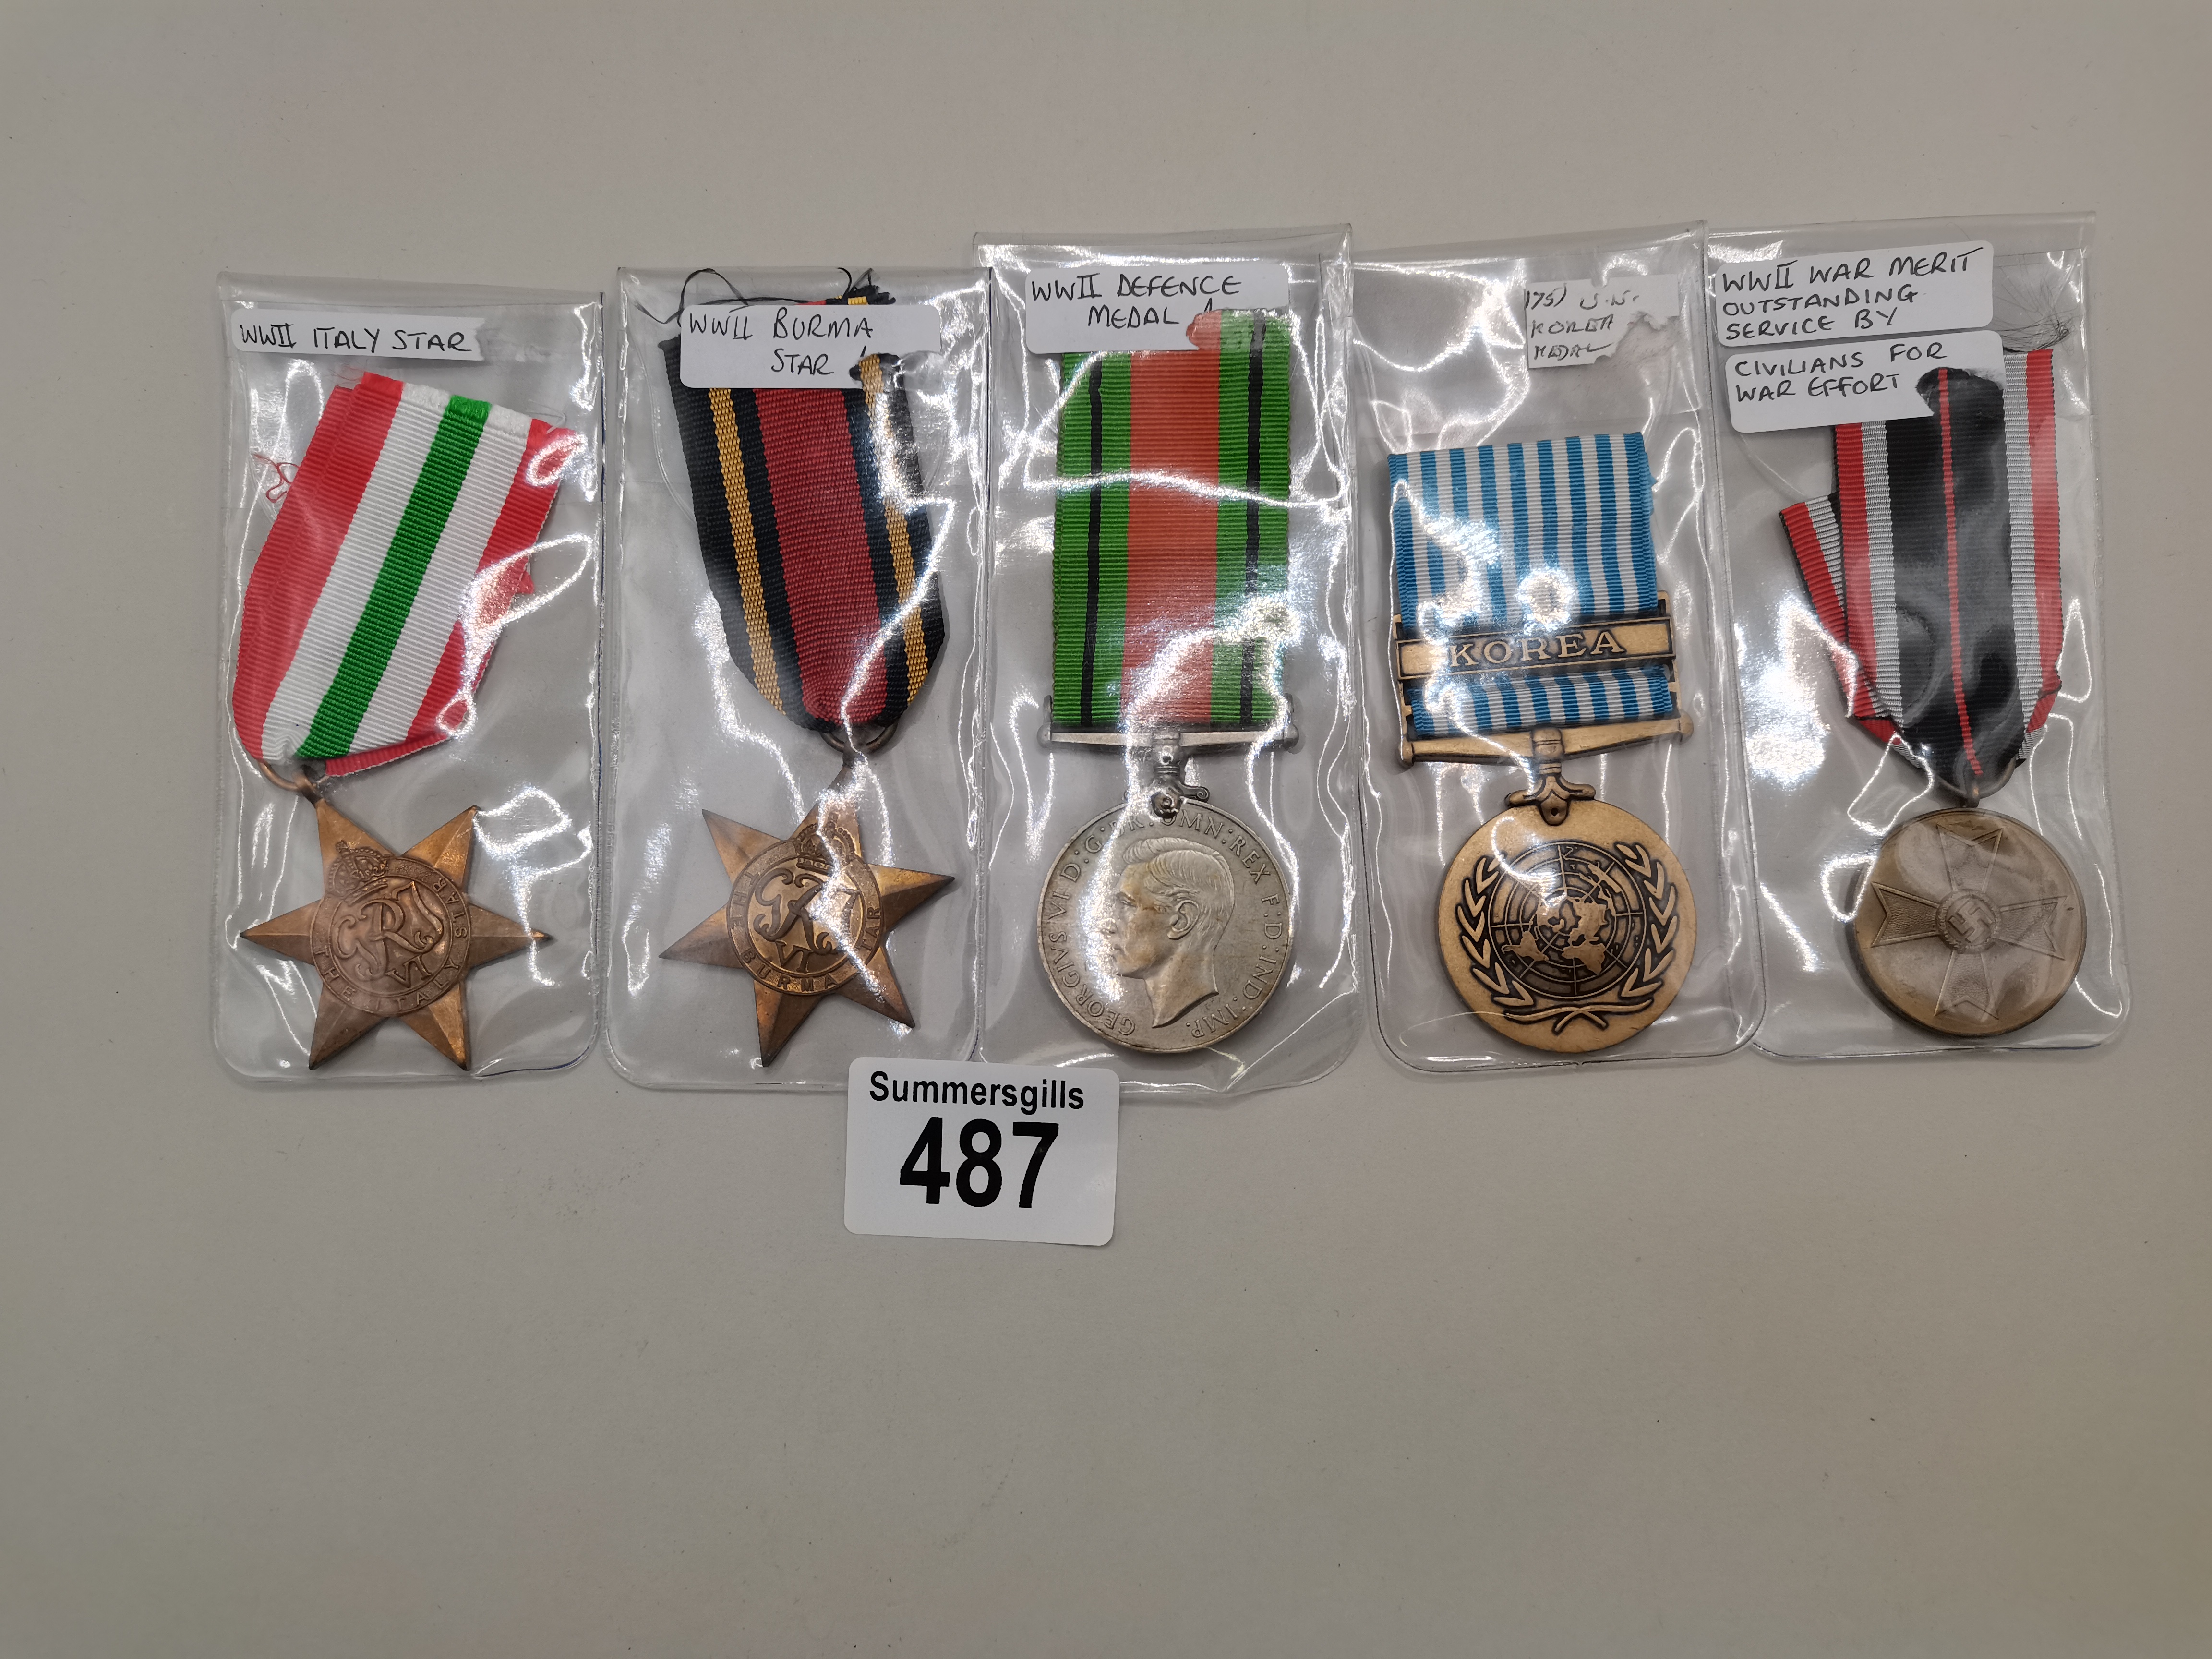 x5 medals